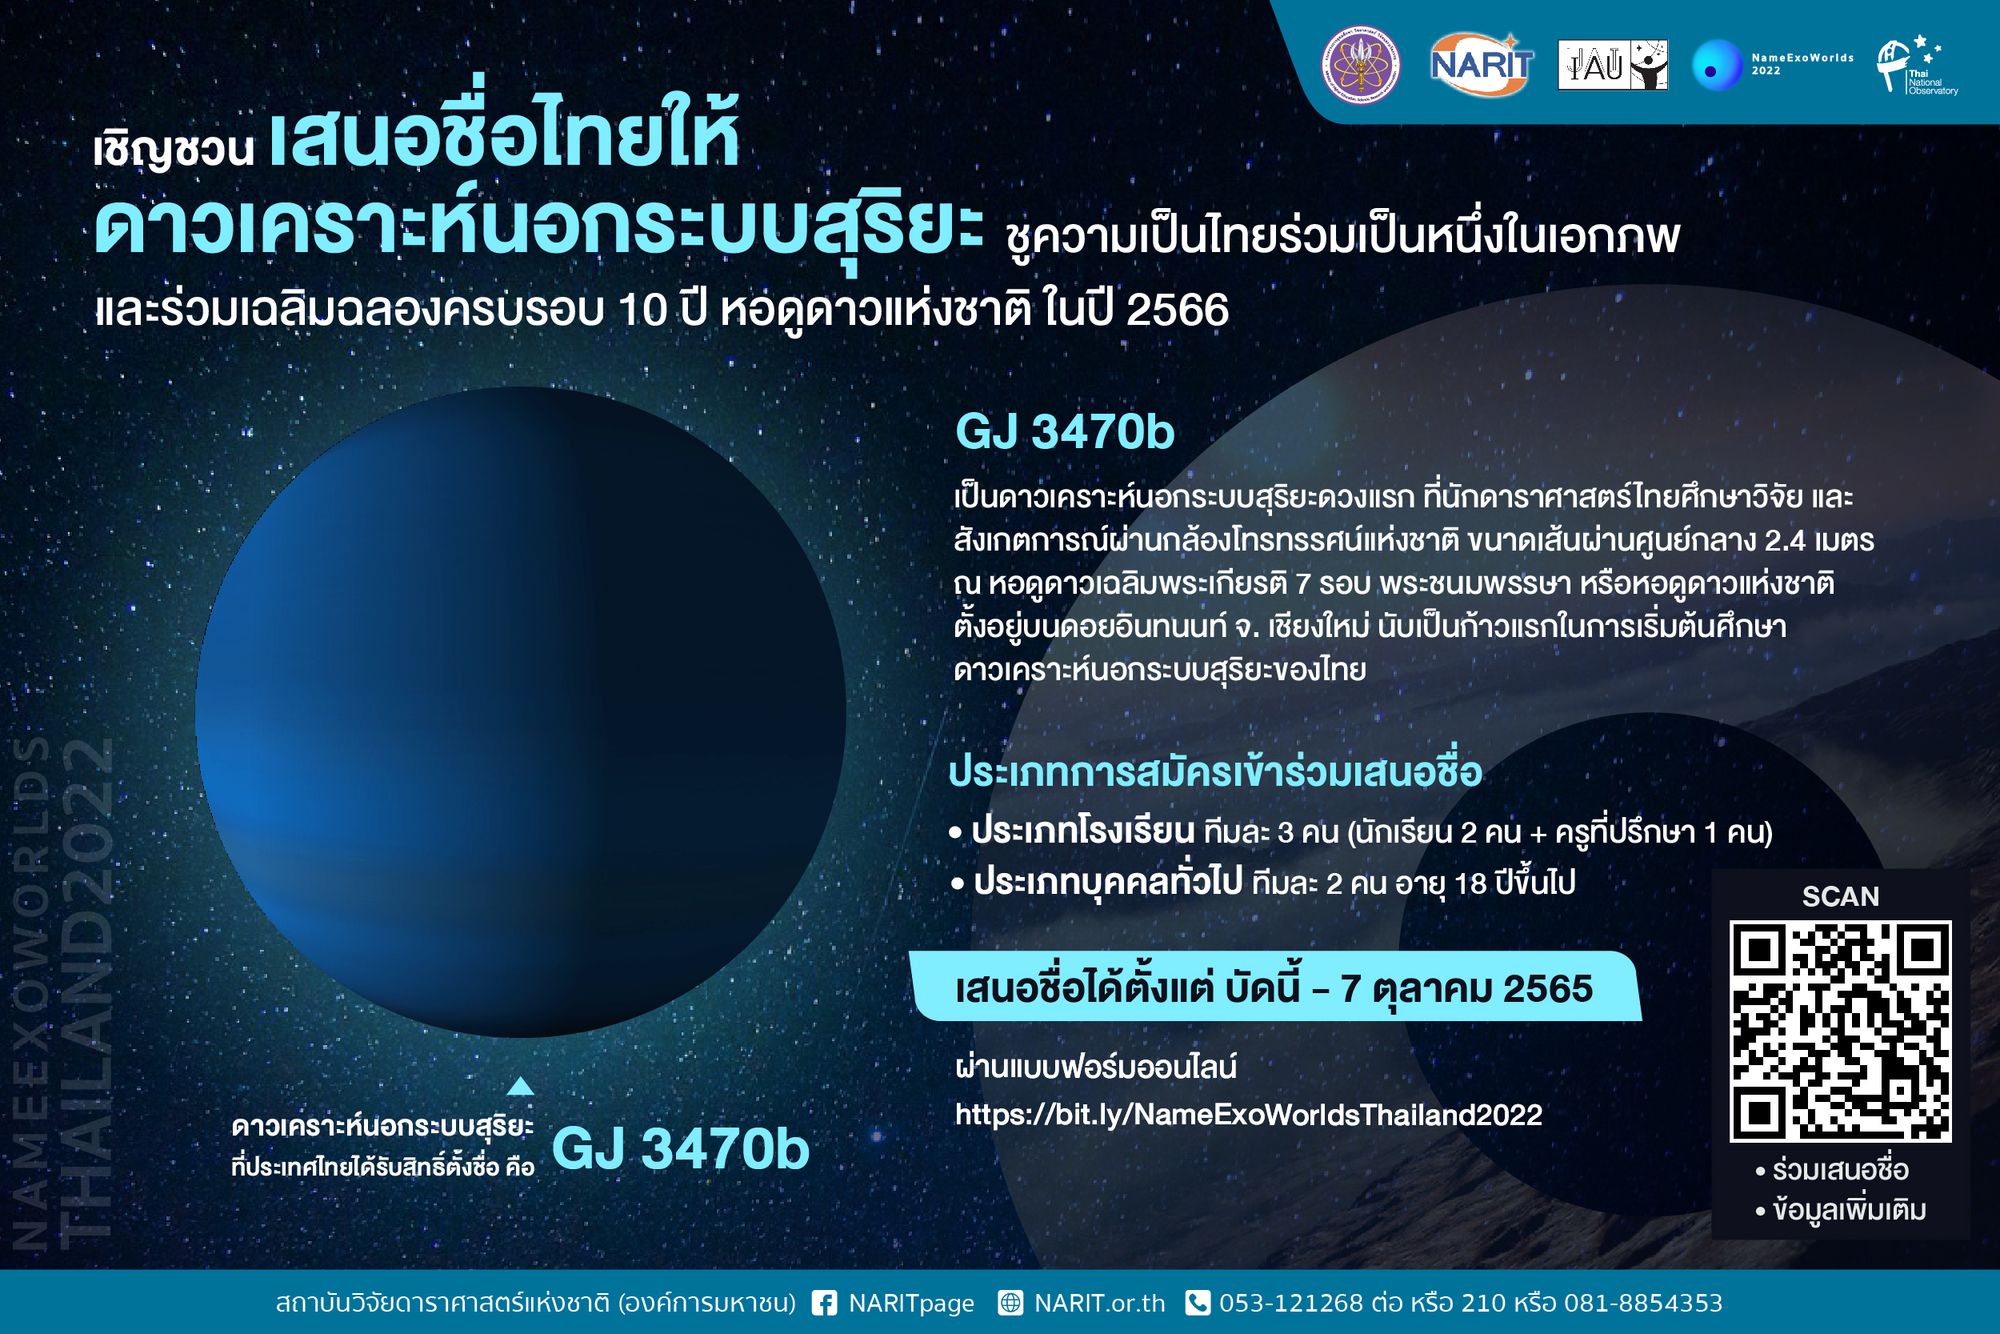 ชวนเสนอชื่อไทยให้ดาวเคราะห์นอกระบบสุริยะ ประจำปี 2565